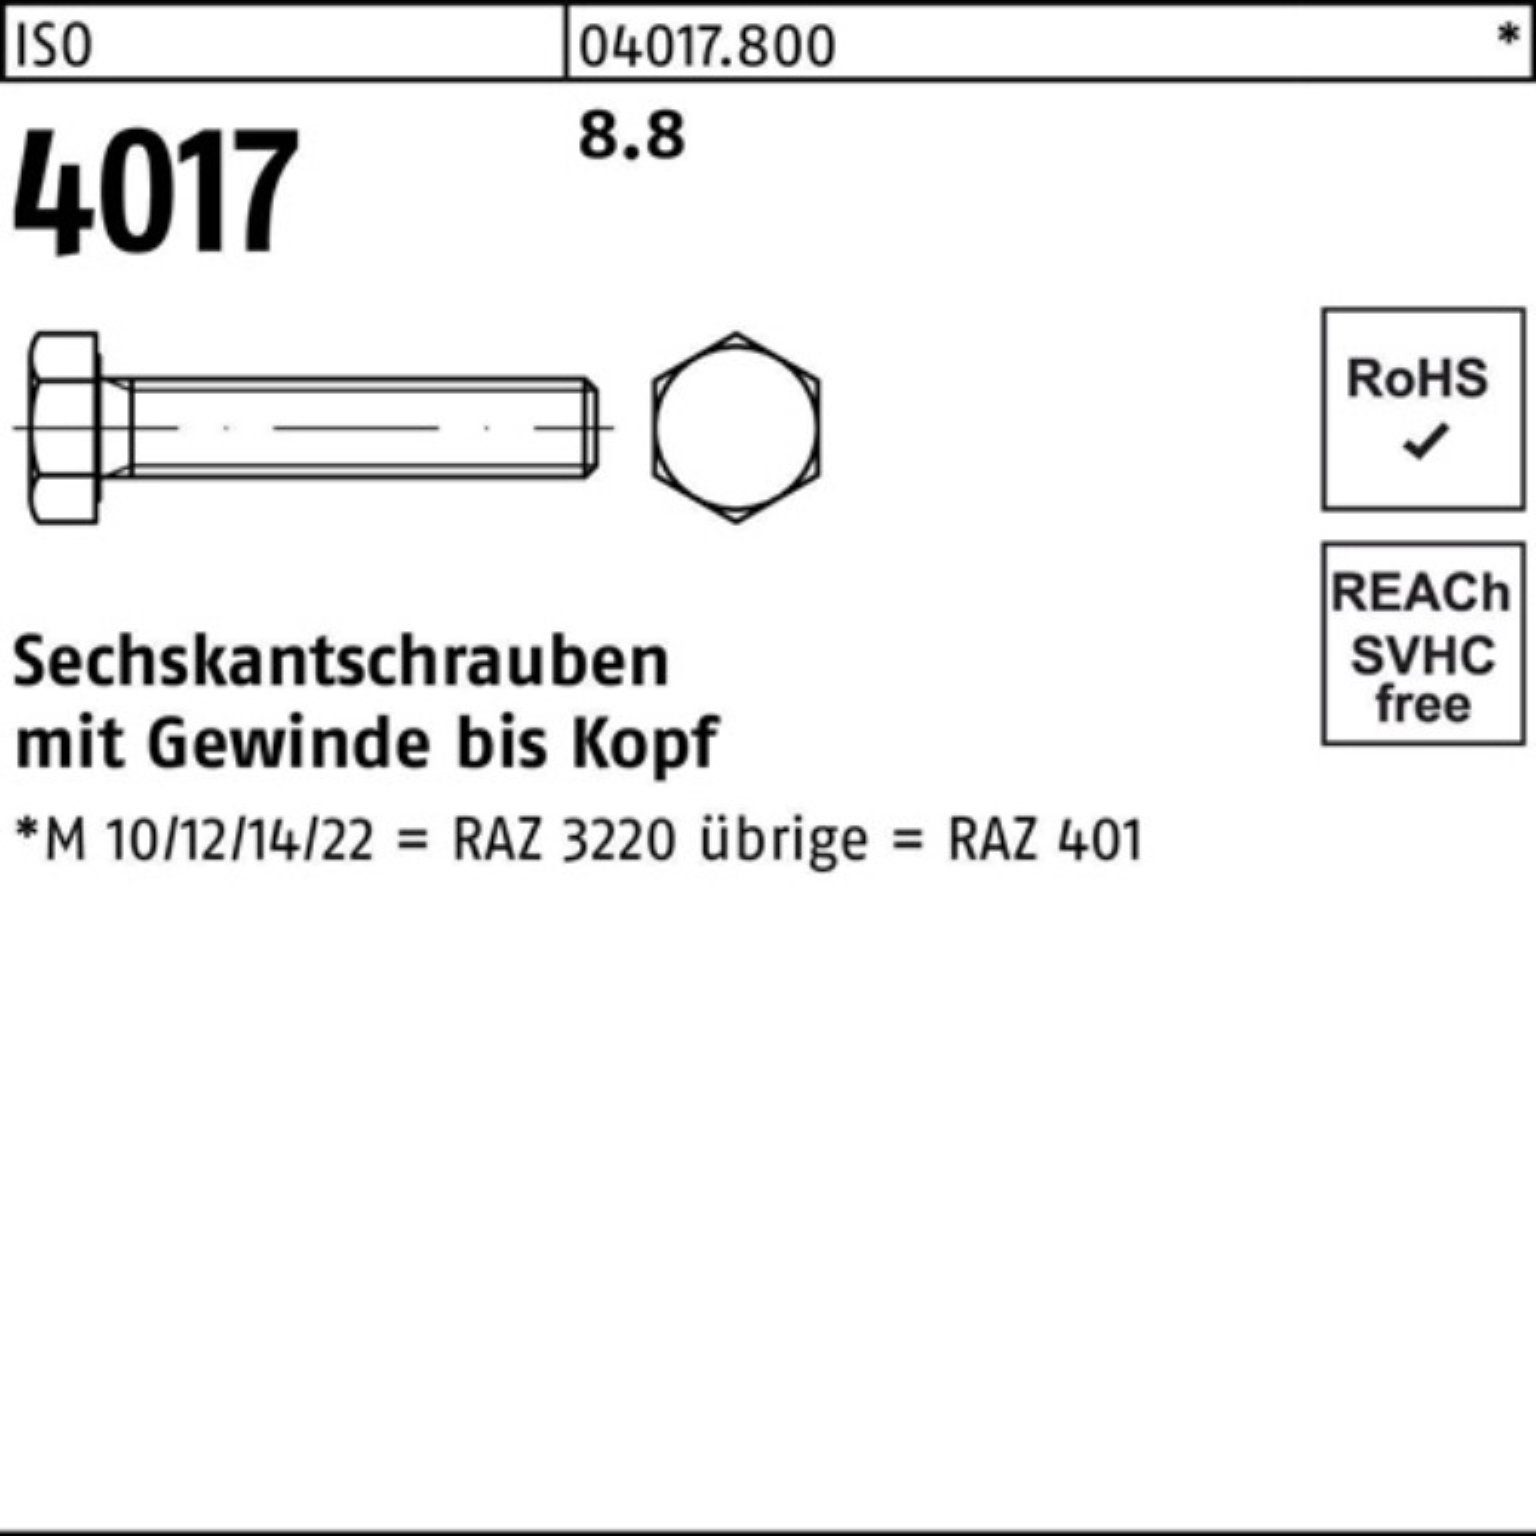 Bufab Sechskantschraube 100er Sechskantschraube 4017 8.8 130 Stück 50 ISO Pack 40 M12x VG ISO